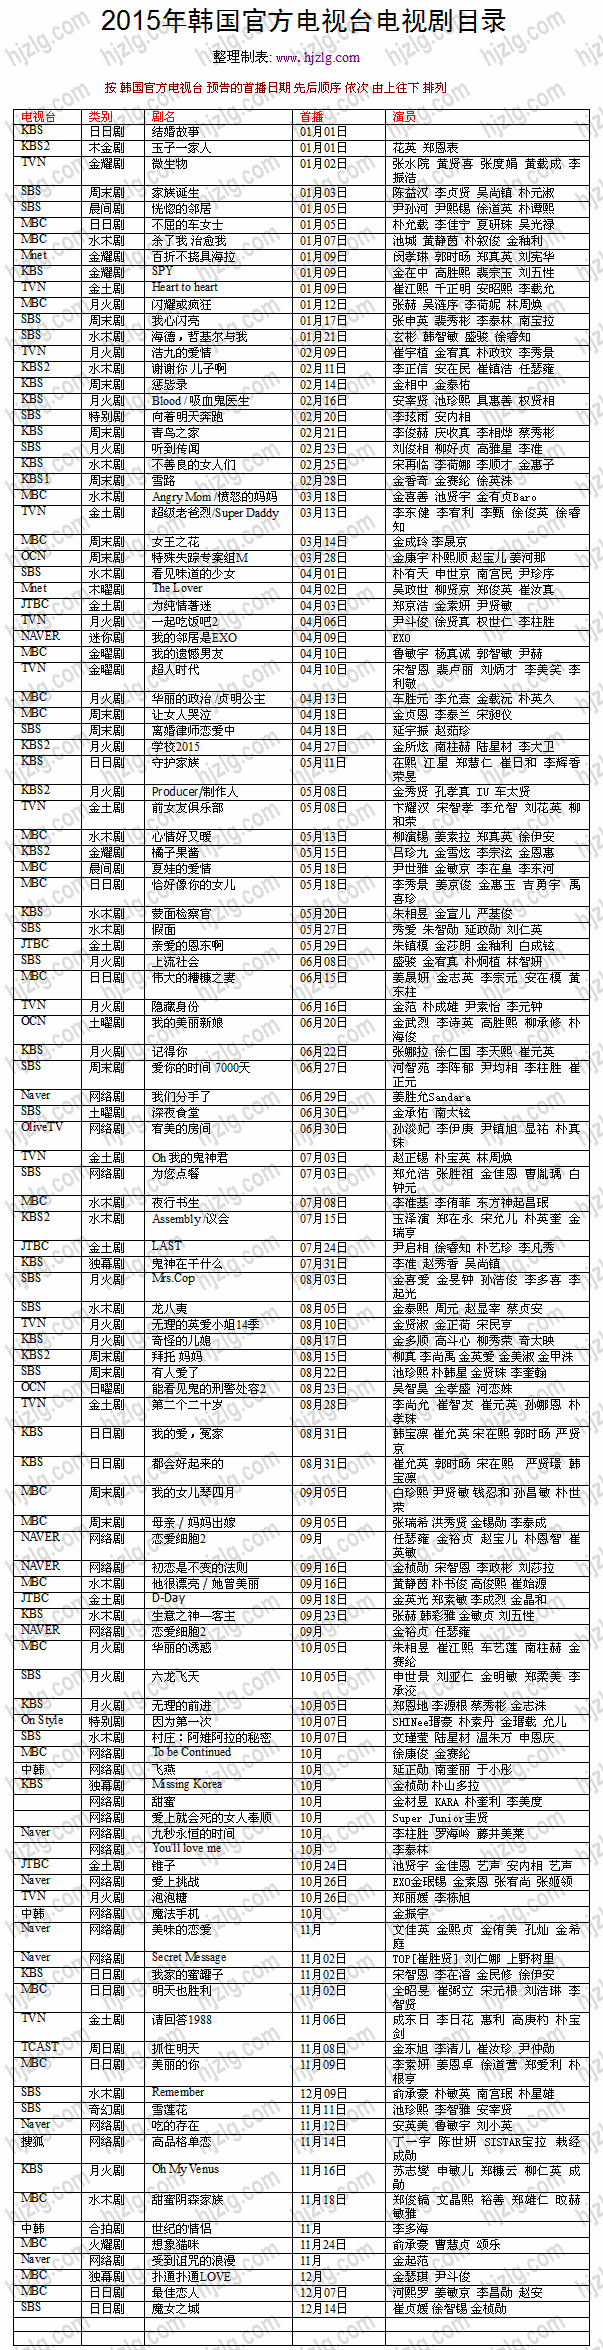 2015 年韩国官方电视剧目录